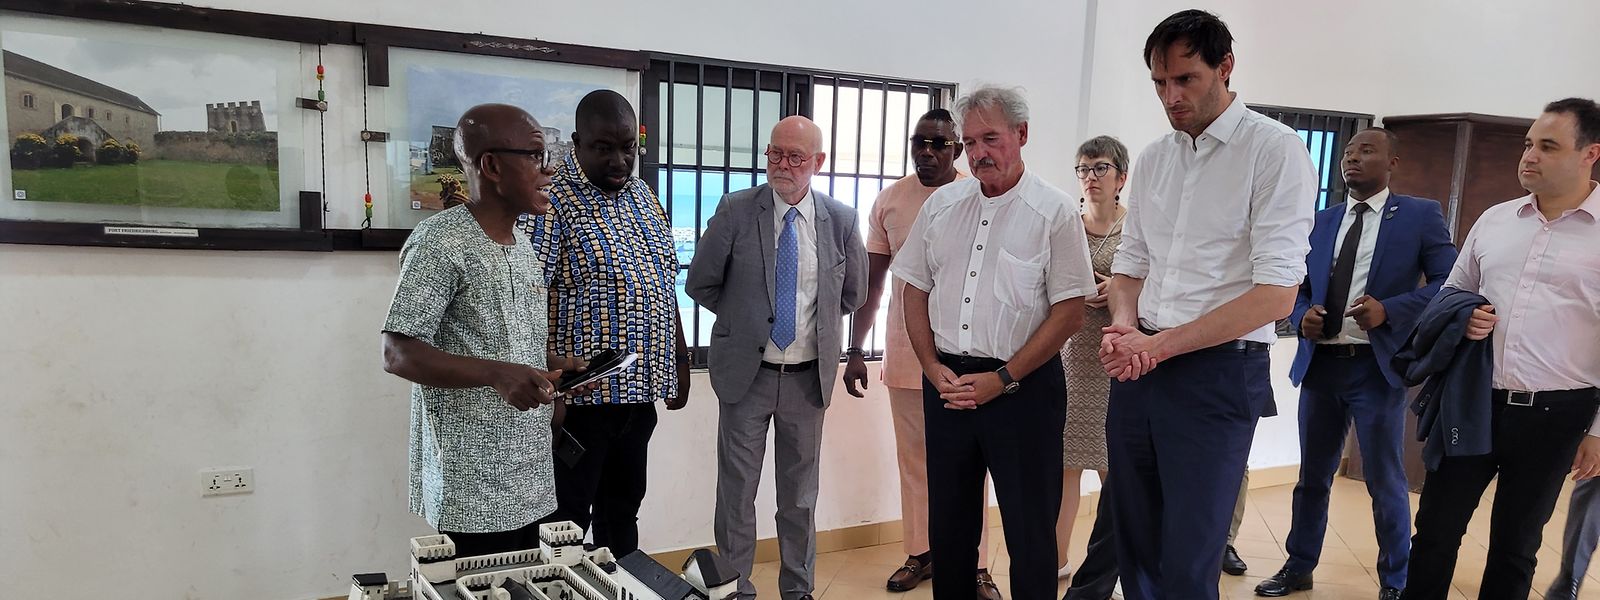 In Ghana besuchte die Benelux-Delegation das Ussher Fort, eine von den Niederlanden errichtete Festung entlang der Goldküste, die in den Sklavenhandel verwickelt war.